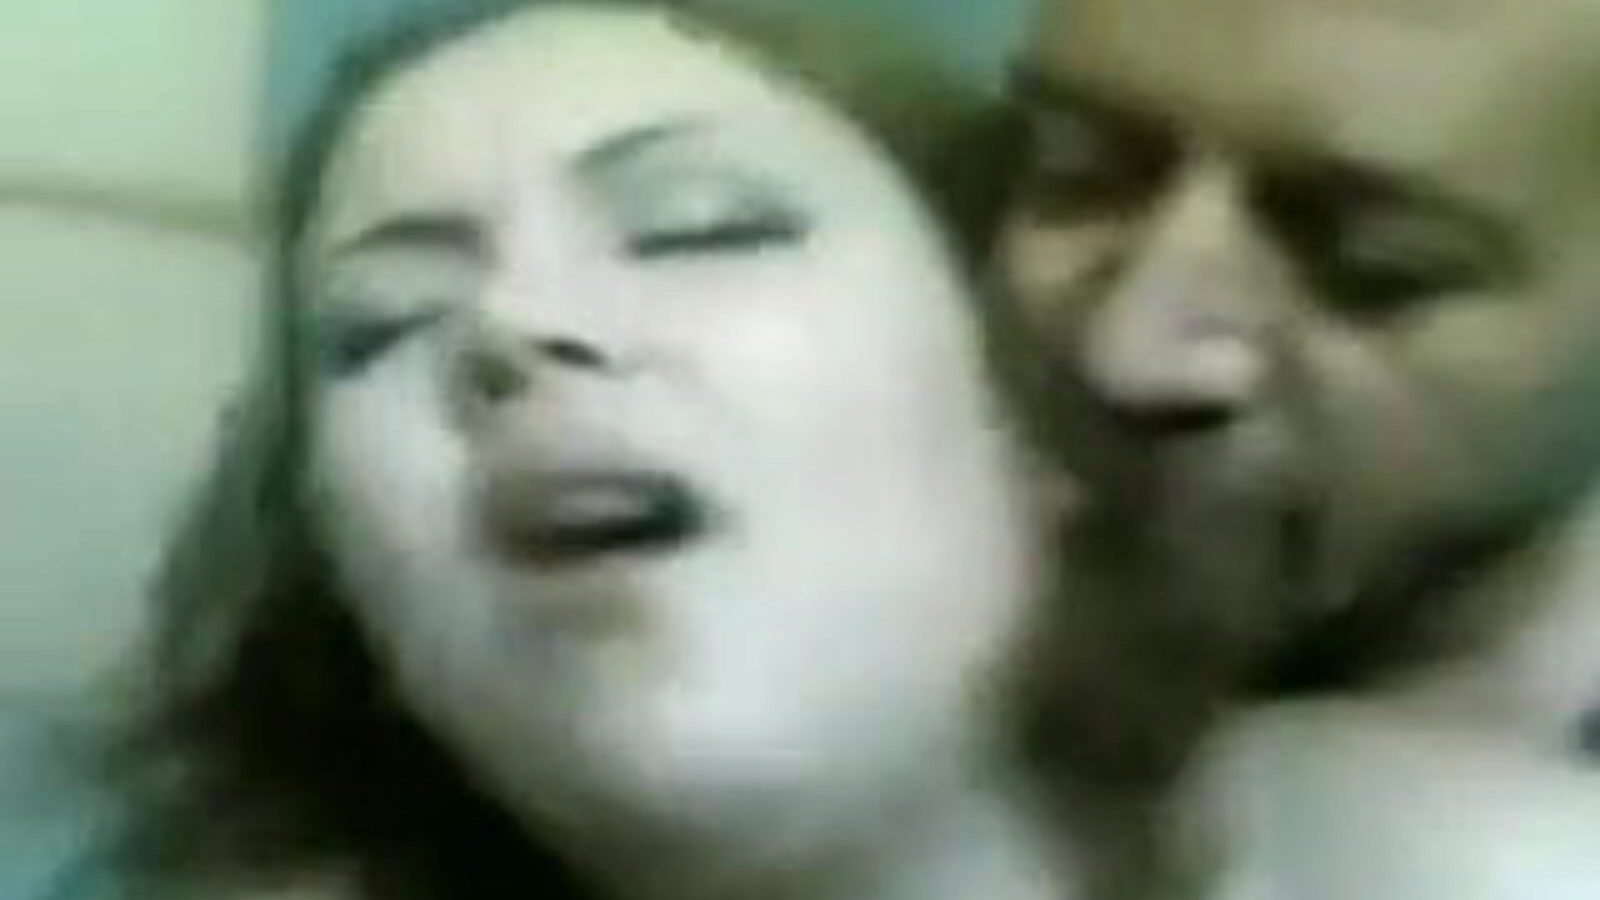 madame lily: video porno gratuit șaizeci și nouă 07 - xhamster urmărește madame lily tube clip de dragoste gratuit pentru toți pe xhamster, cu grupa superioară de arabă egipteană, 69 și episoade video porno cu fundul mare